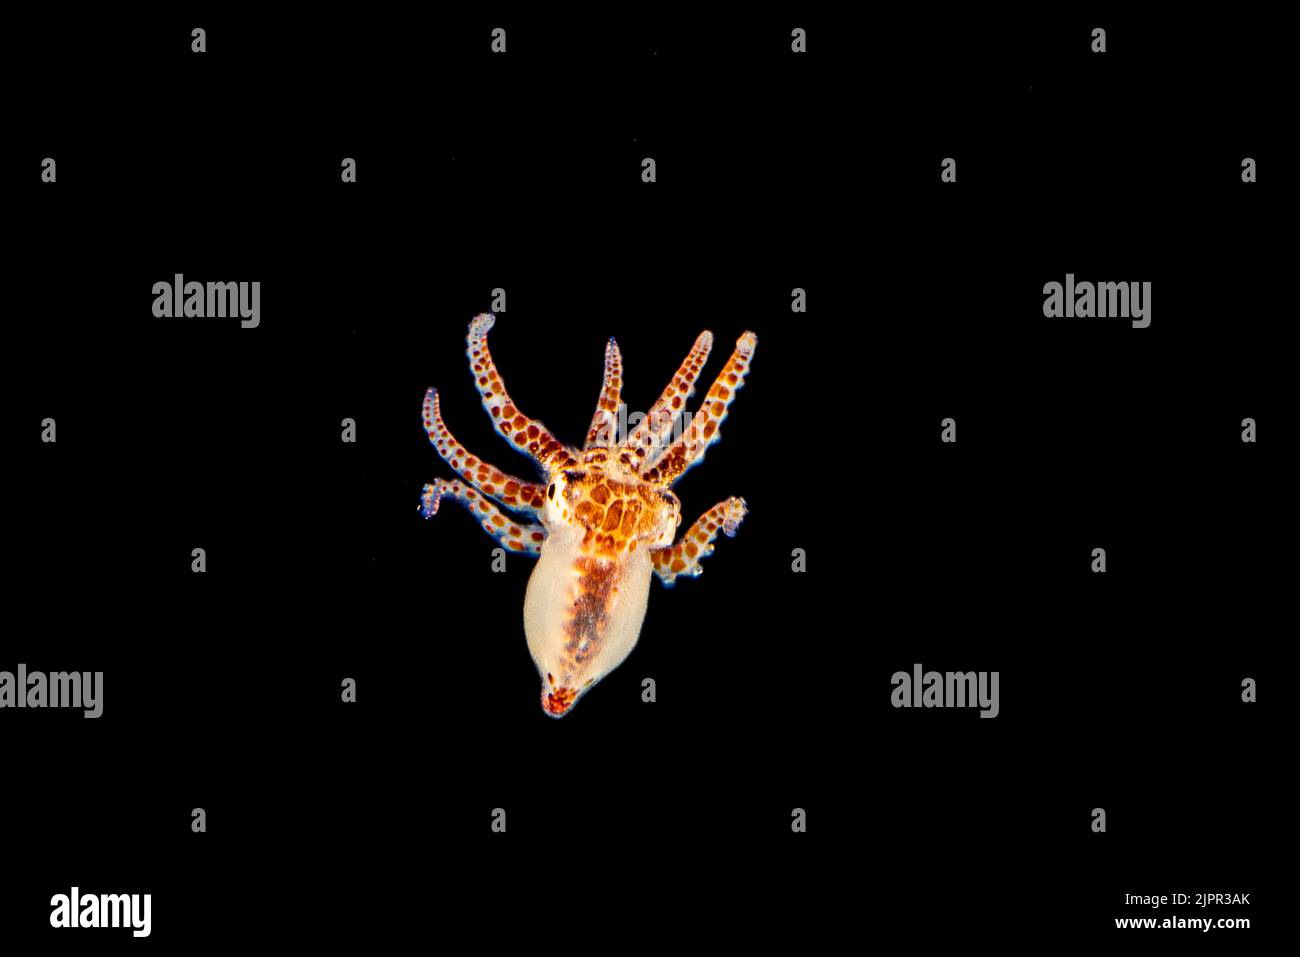 Questo polpo larvale di giorno, Octopus cyanea, è solo un acroos di pollice ed è stato fotografato in oceano aperto. Questa specie è anche conosciuta come il grande polpo blu Foto Stock